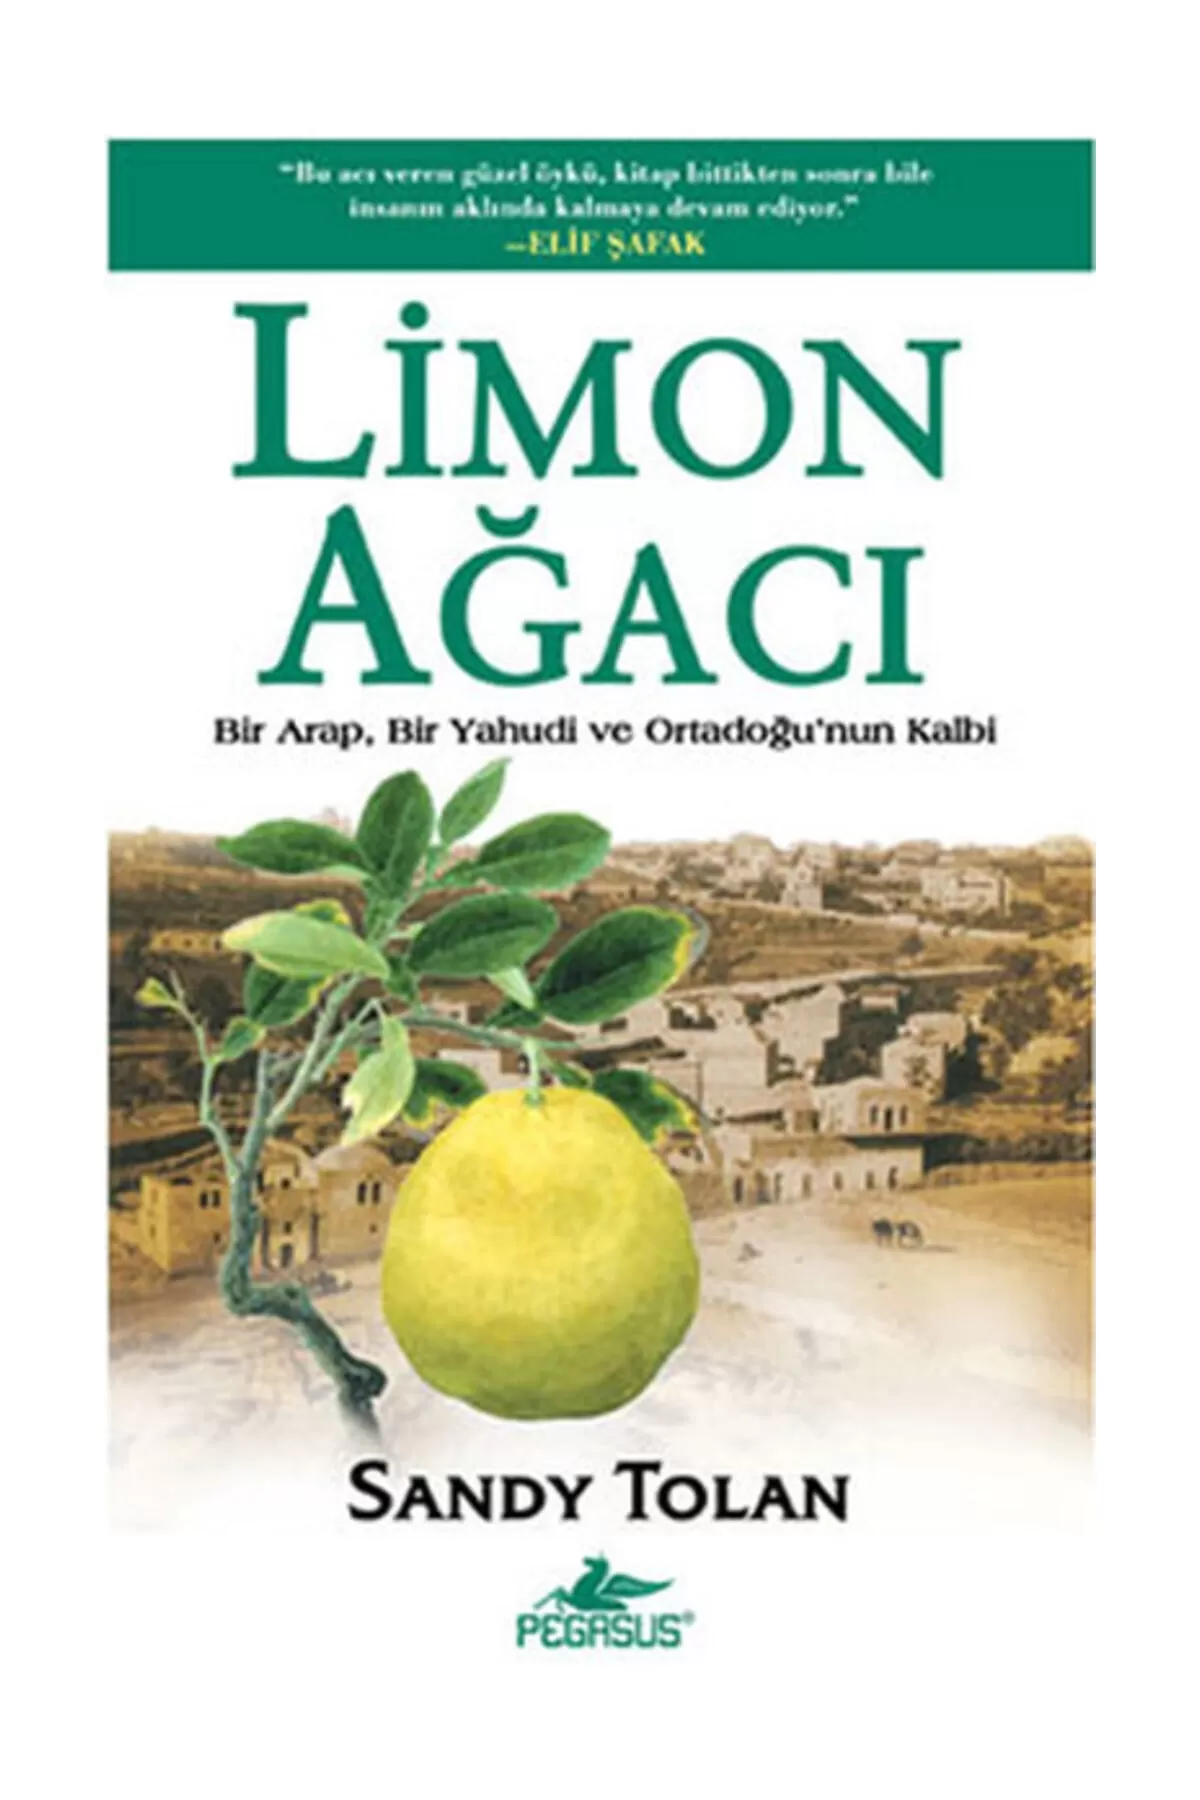 Sendi Tolan "Limon ağacı" PDF